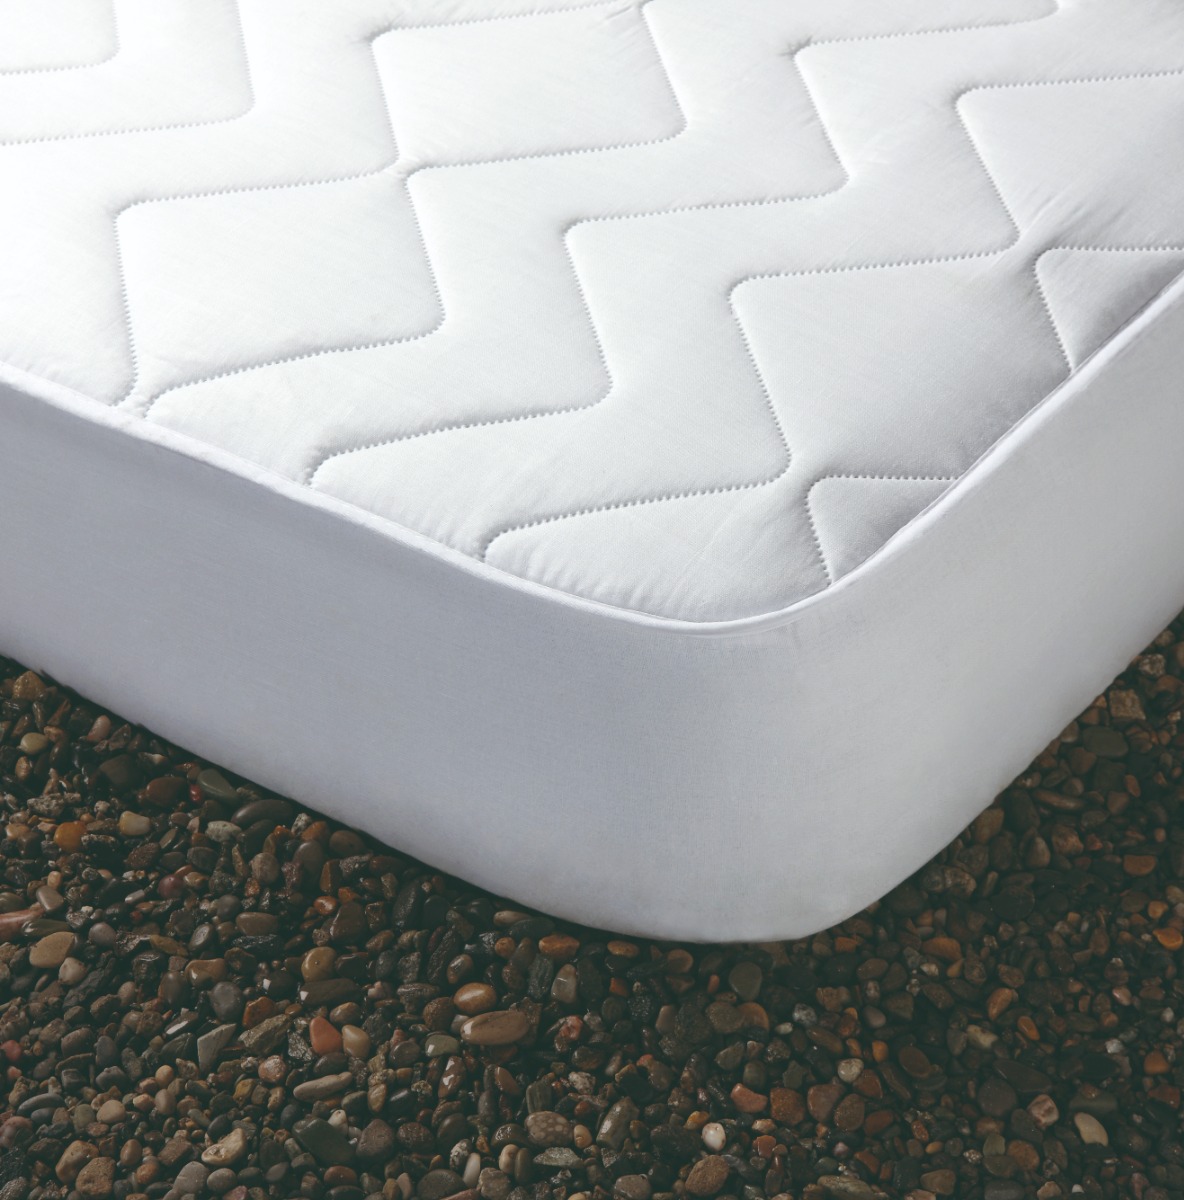 Protecție saltea matlasată cu elastic impermeabilă, 140x200cm, albă